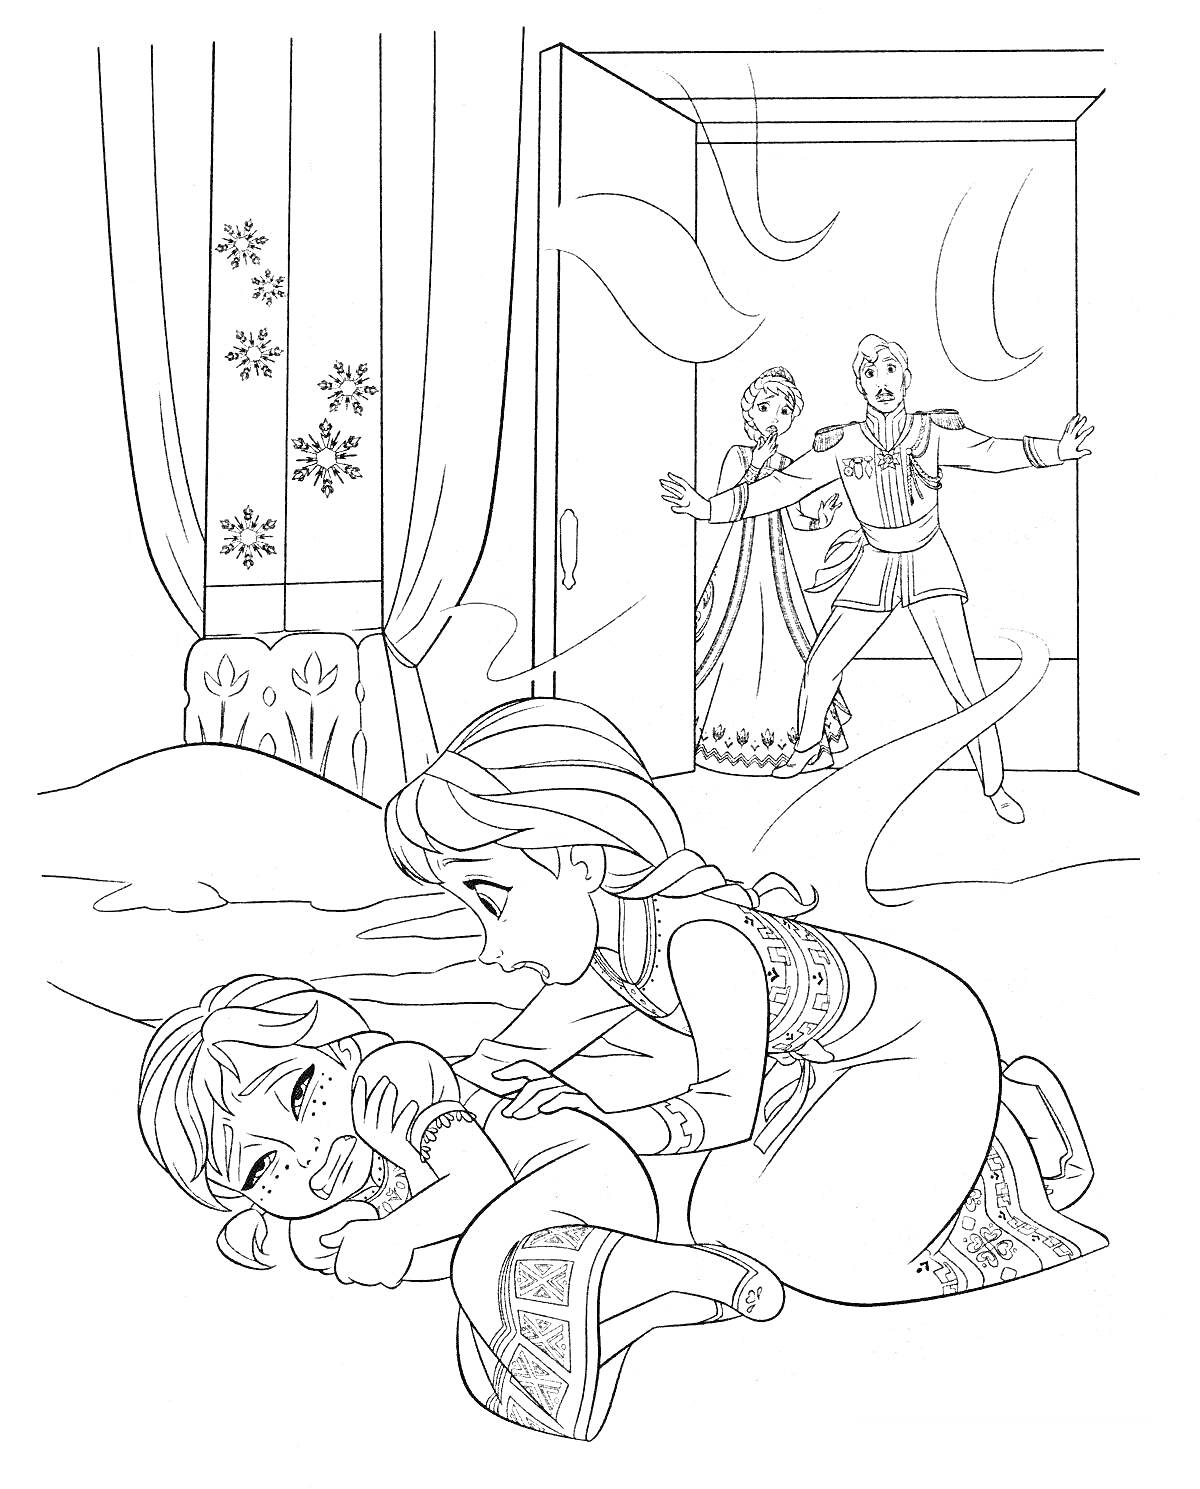 Раскраска Девочка на полу, другая девочка склонилась над ней, мужчина и женщина в дверях, декорации со снежинками